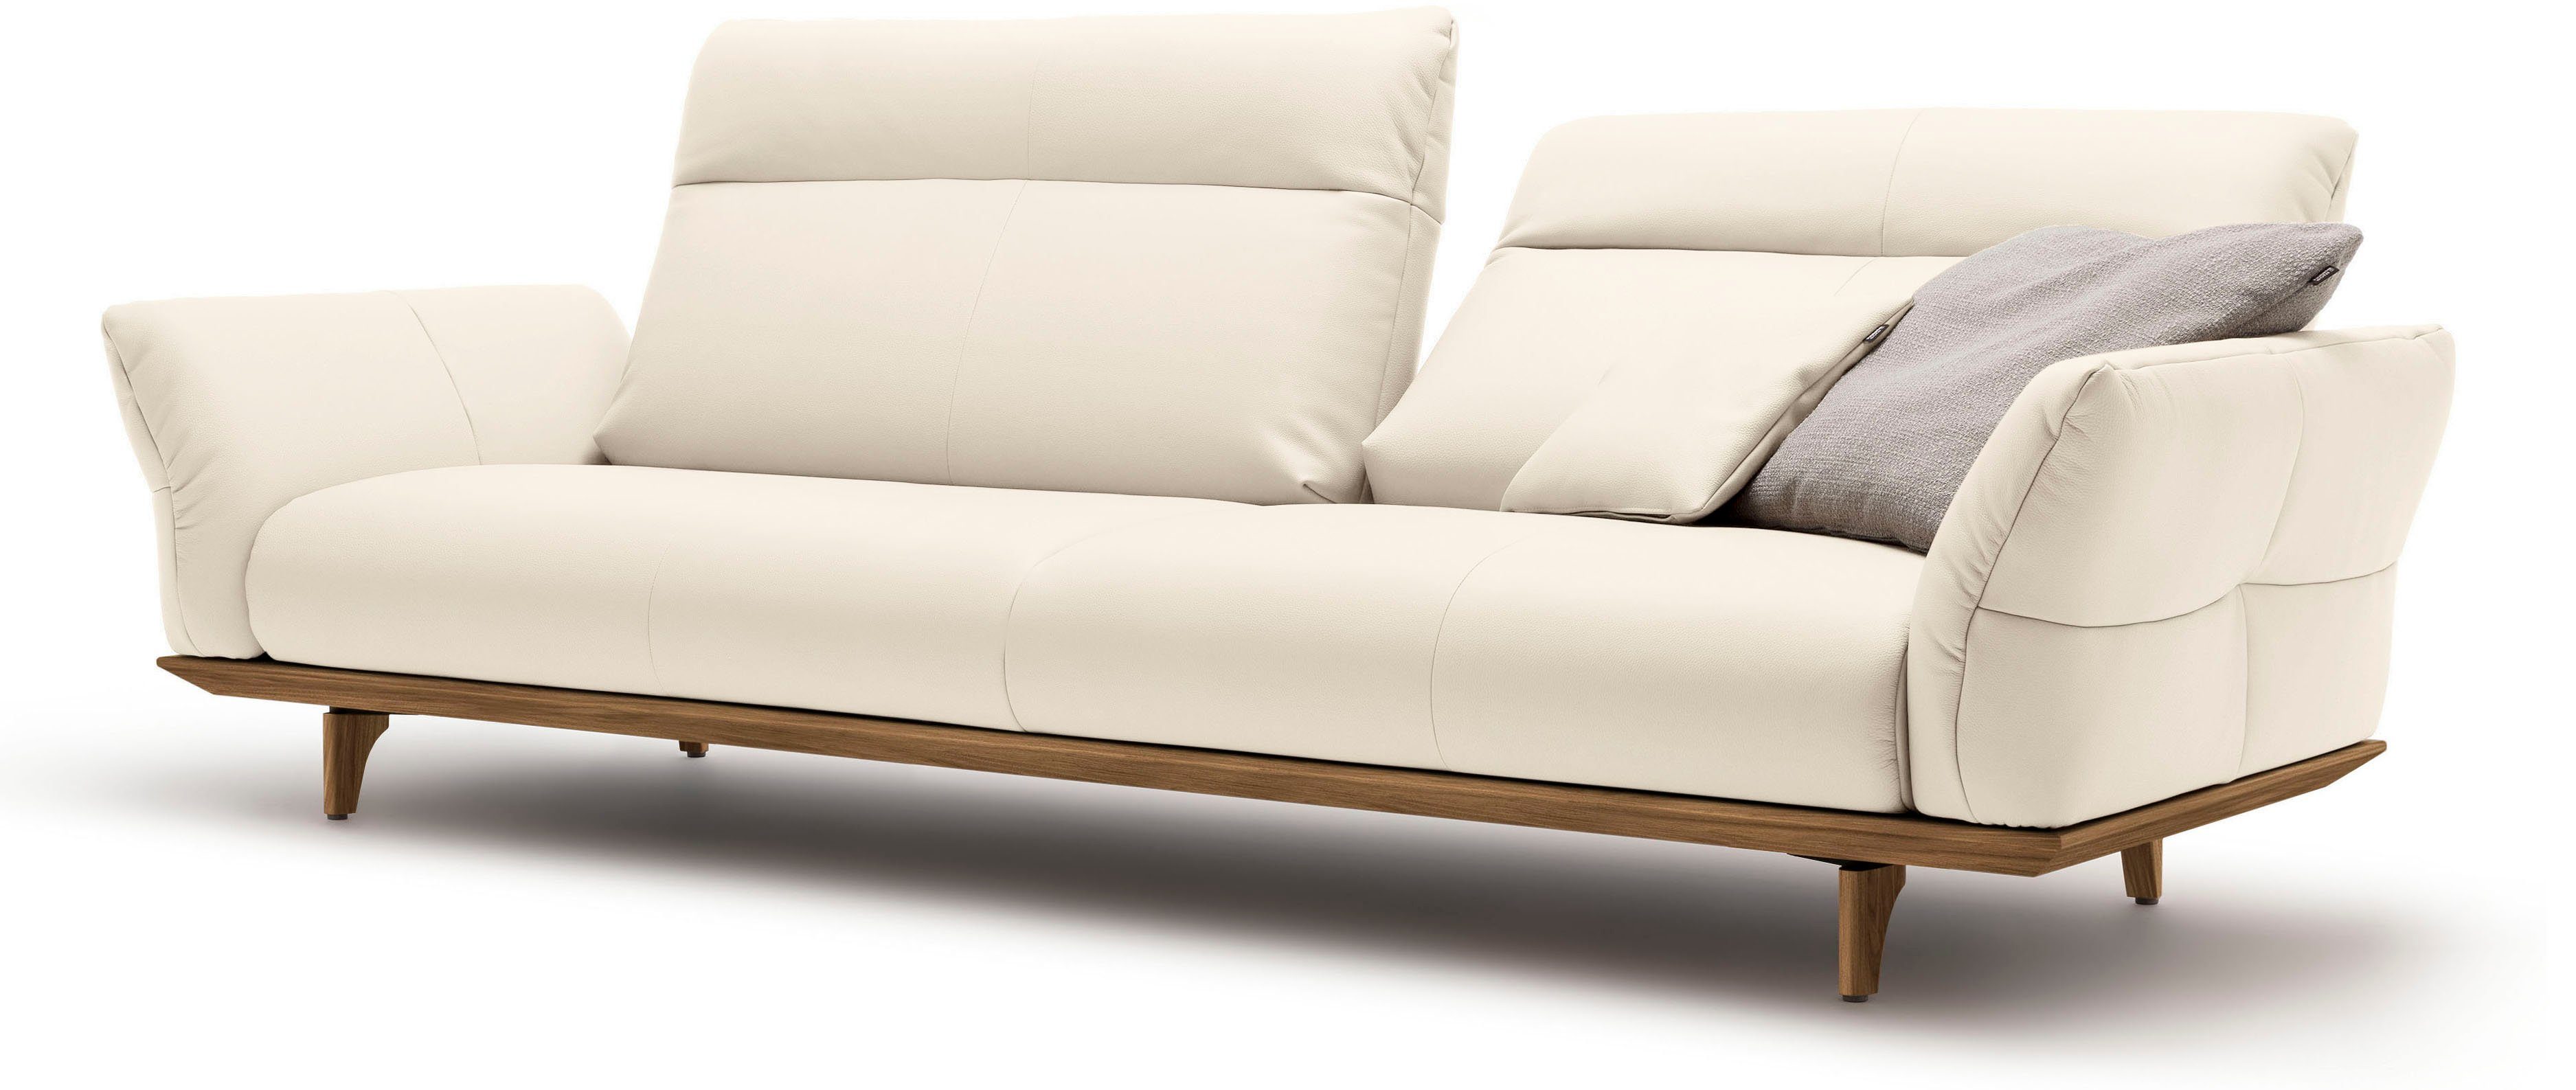 cm Füße sofa 248 4-Sitzer Nussbaum, Sockel Nussbaum, hs.460, hülsta in Breite